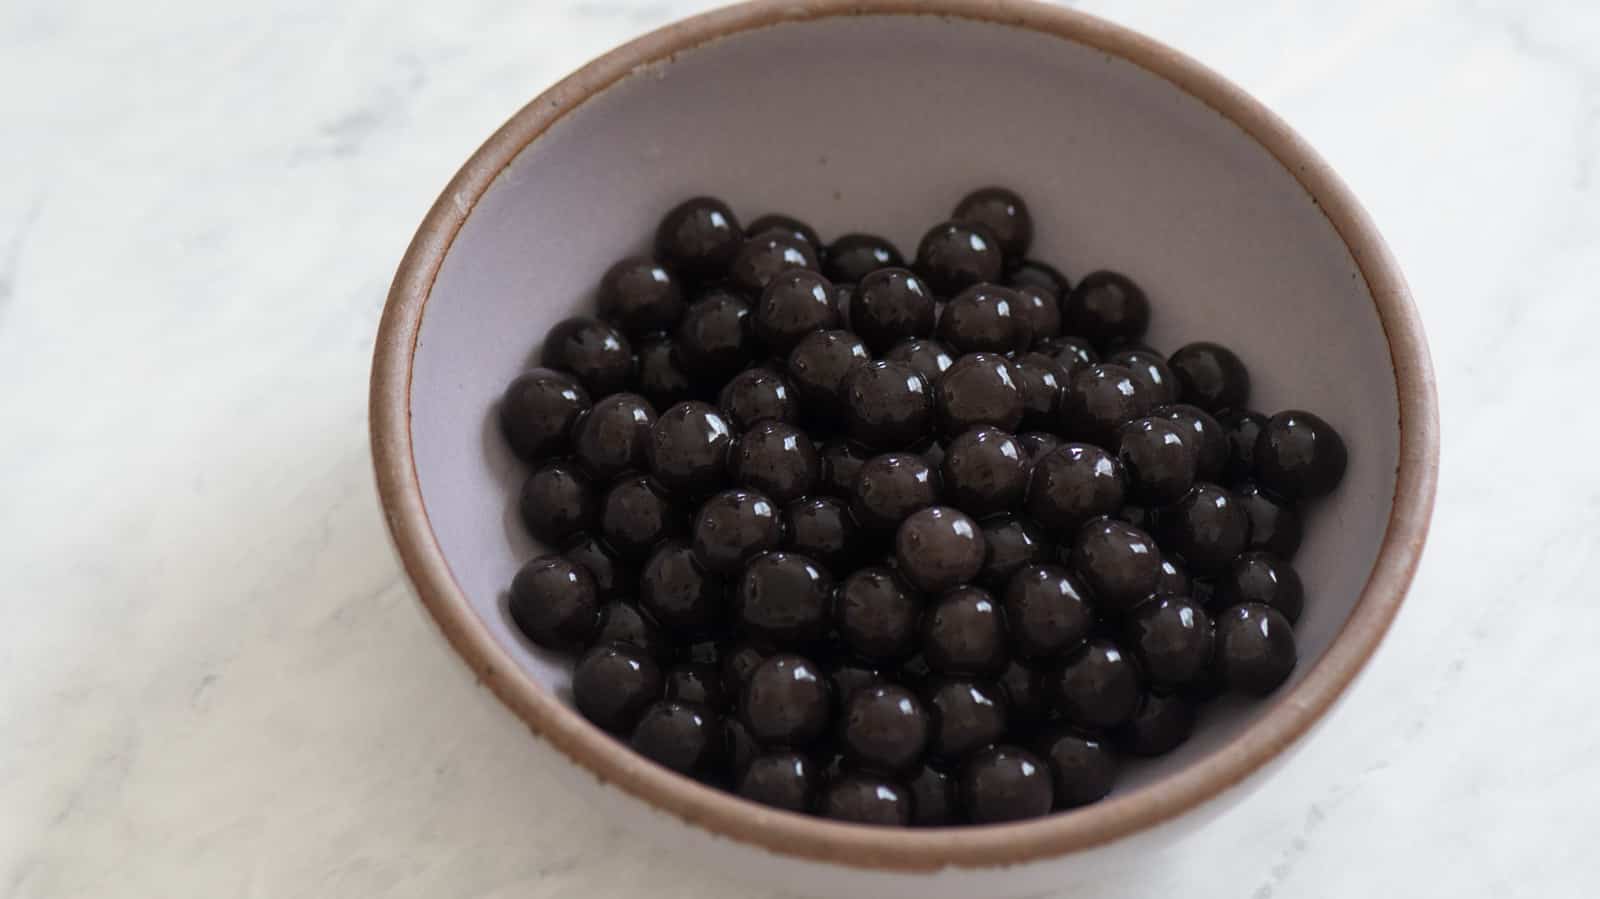 Black-colored boba (tapioca pearls)